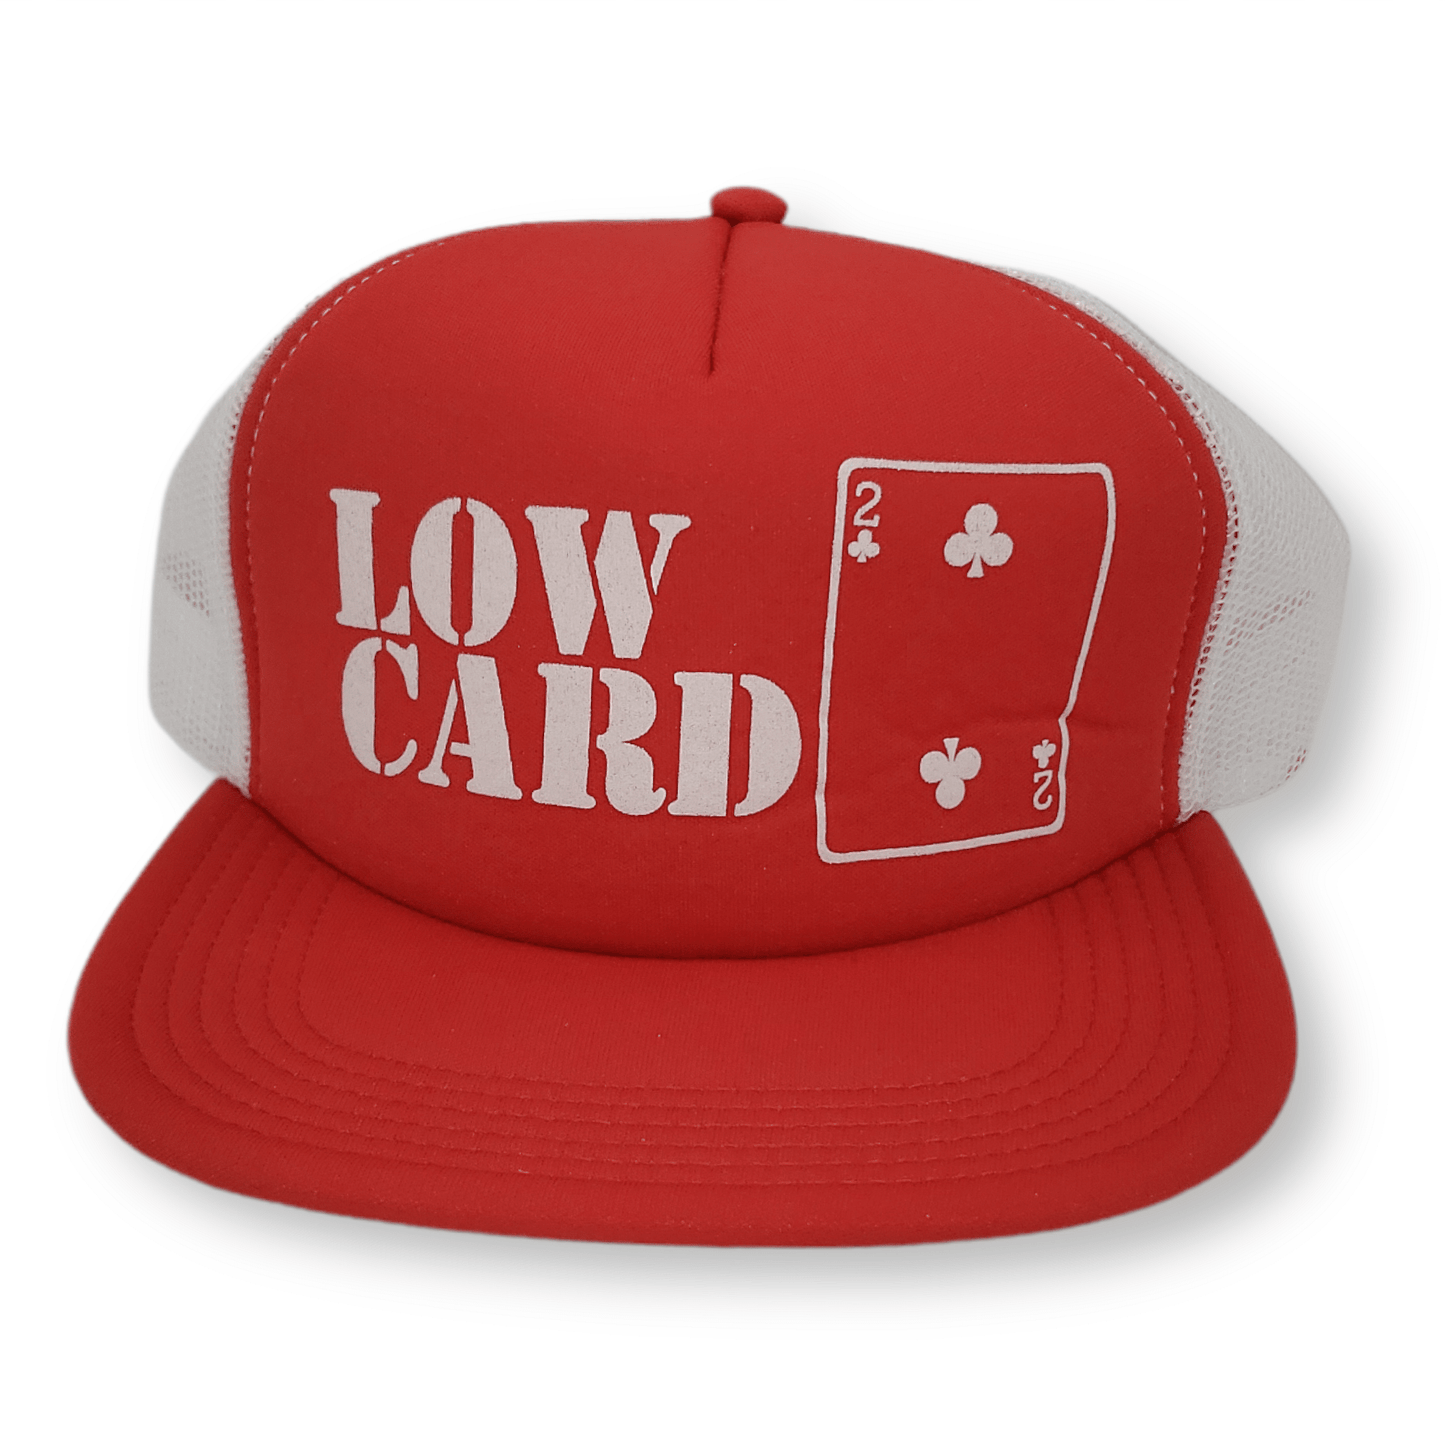 Lowcard | Original Logo Mesh Hat - Red/White